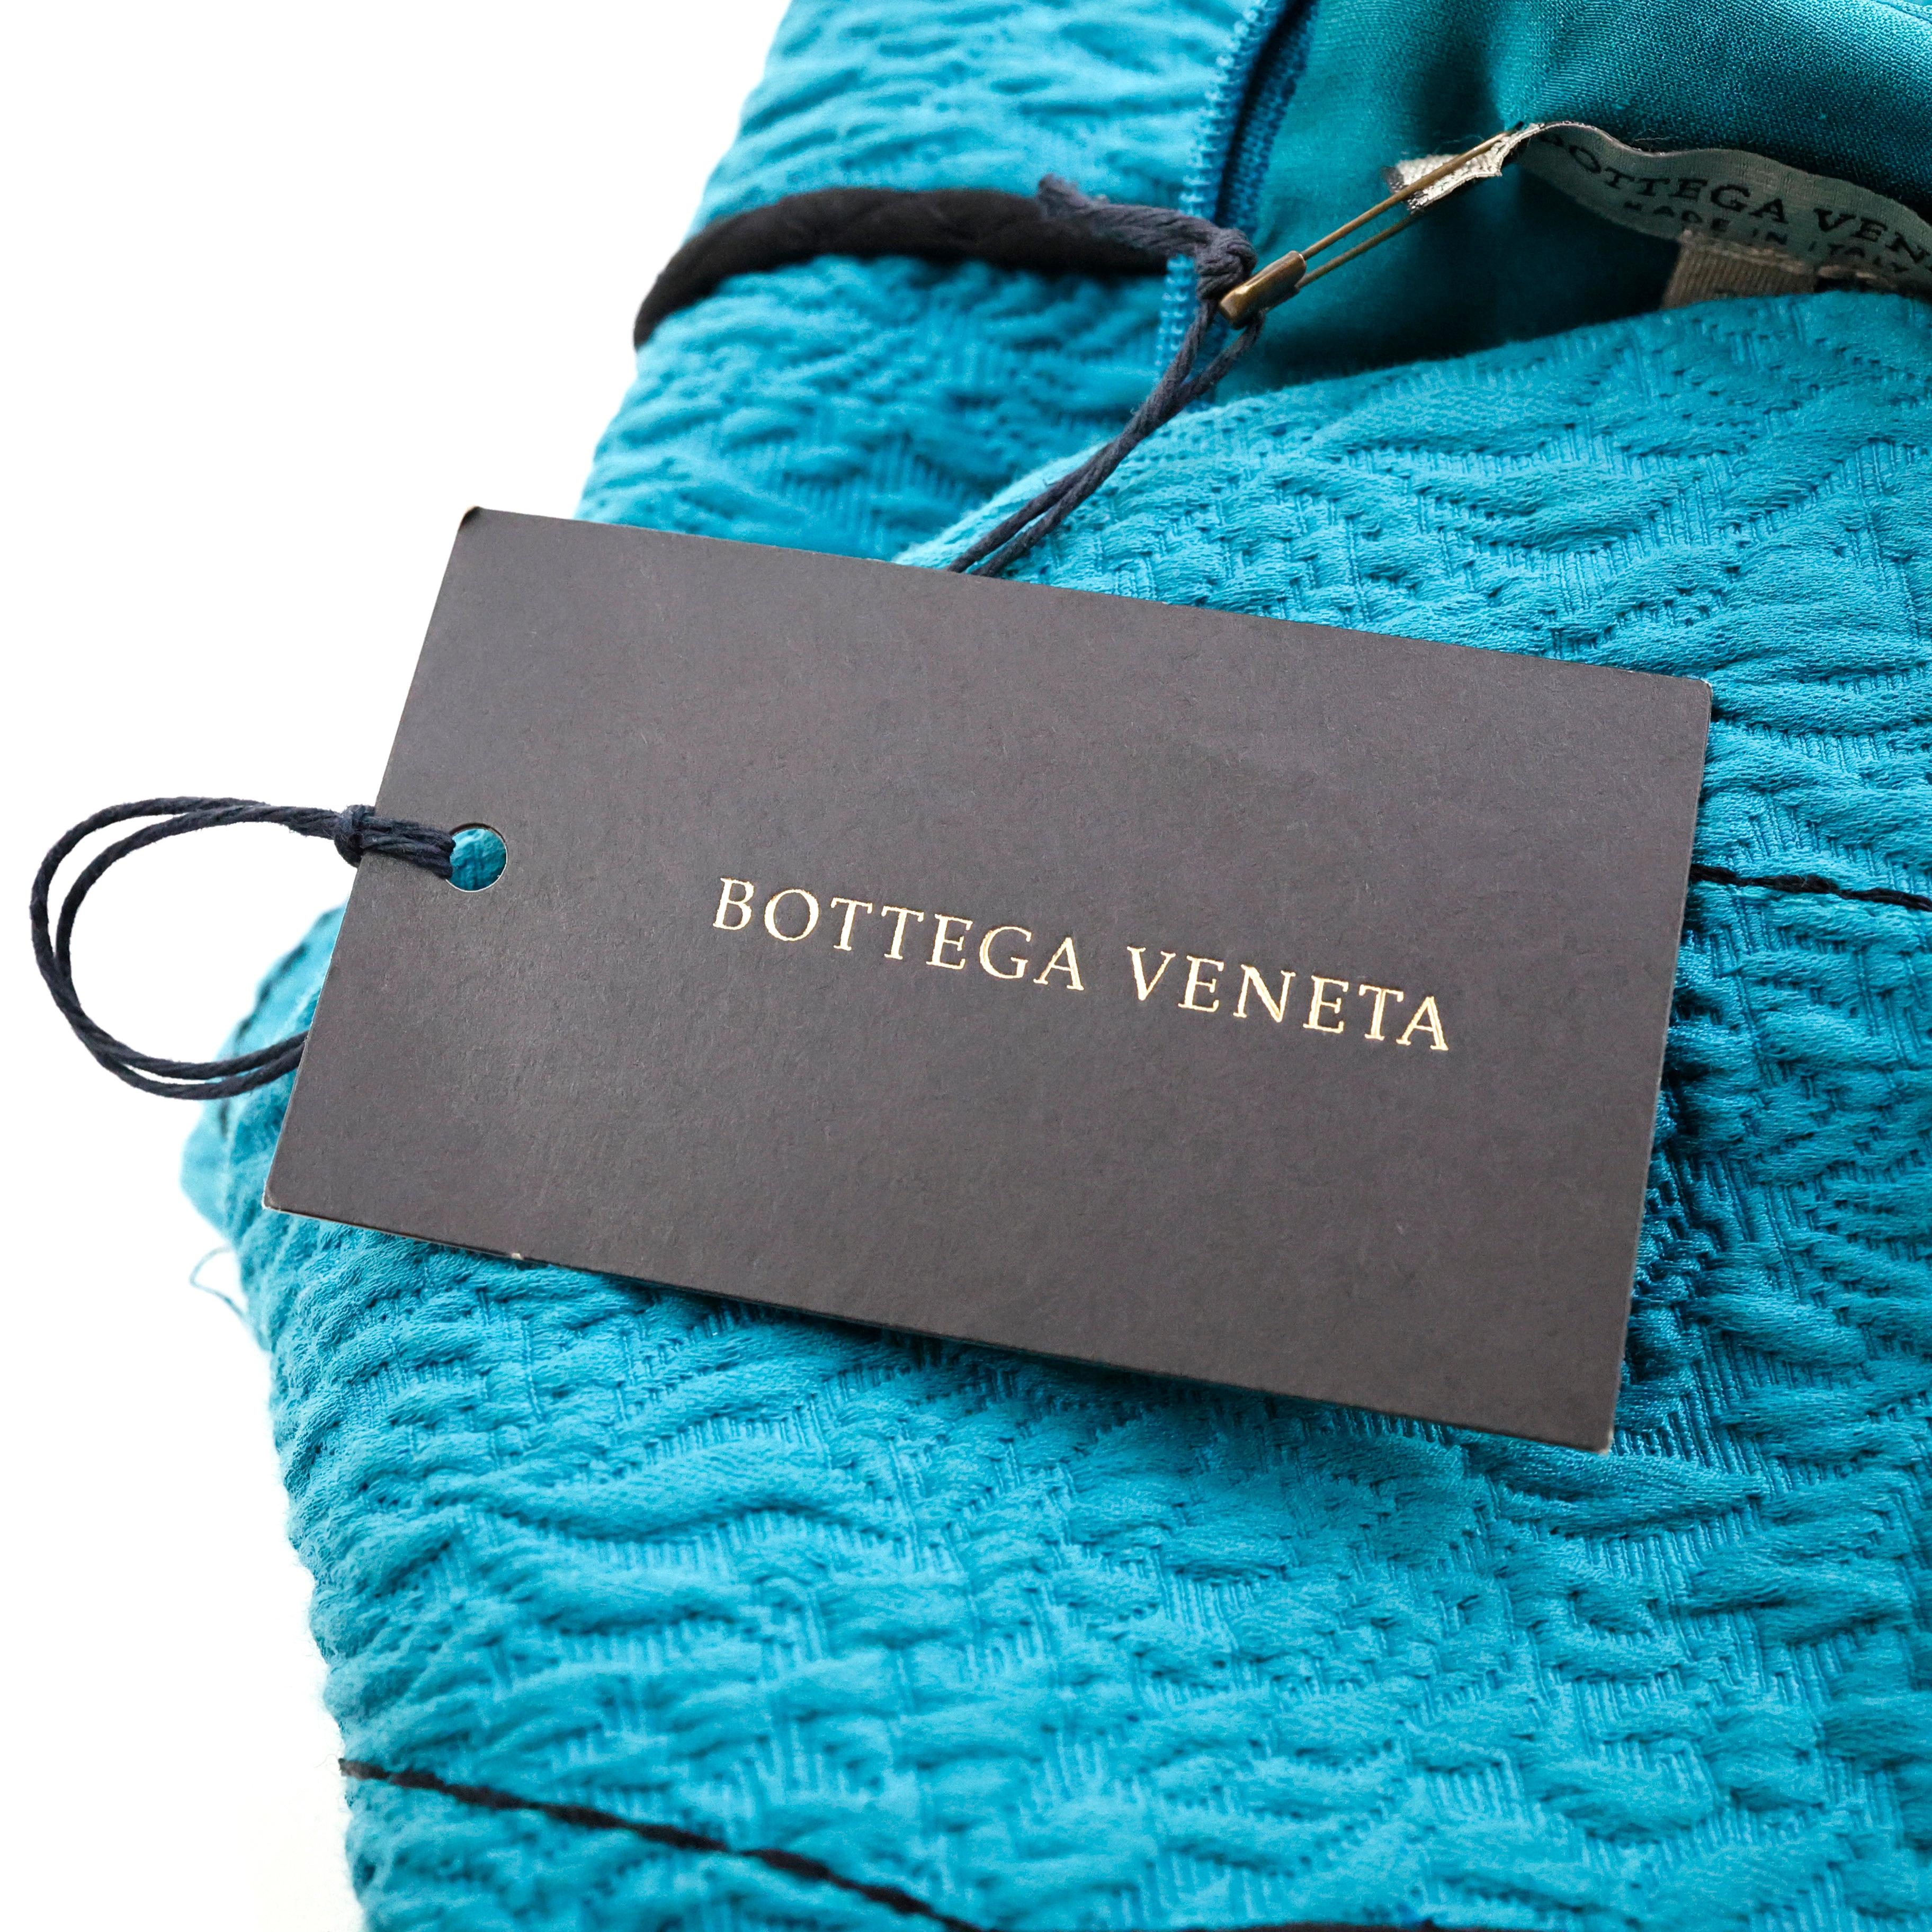 Bottega Veneta SS 2016 Runway Dress For Sale 2